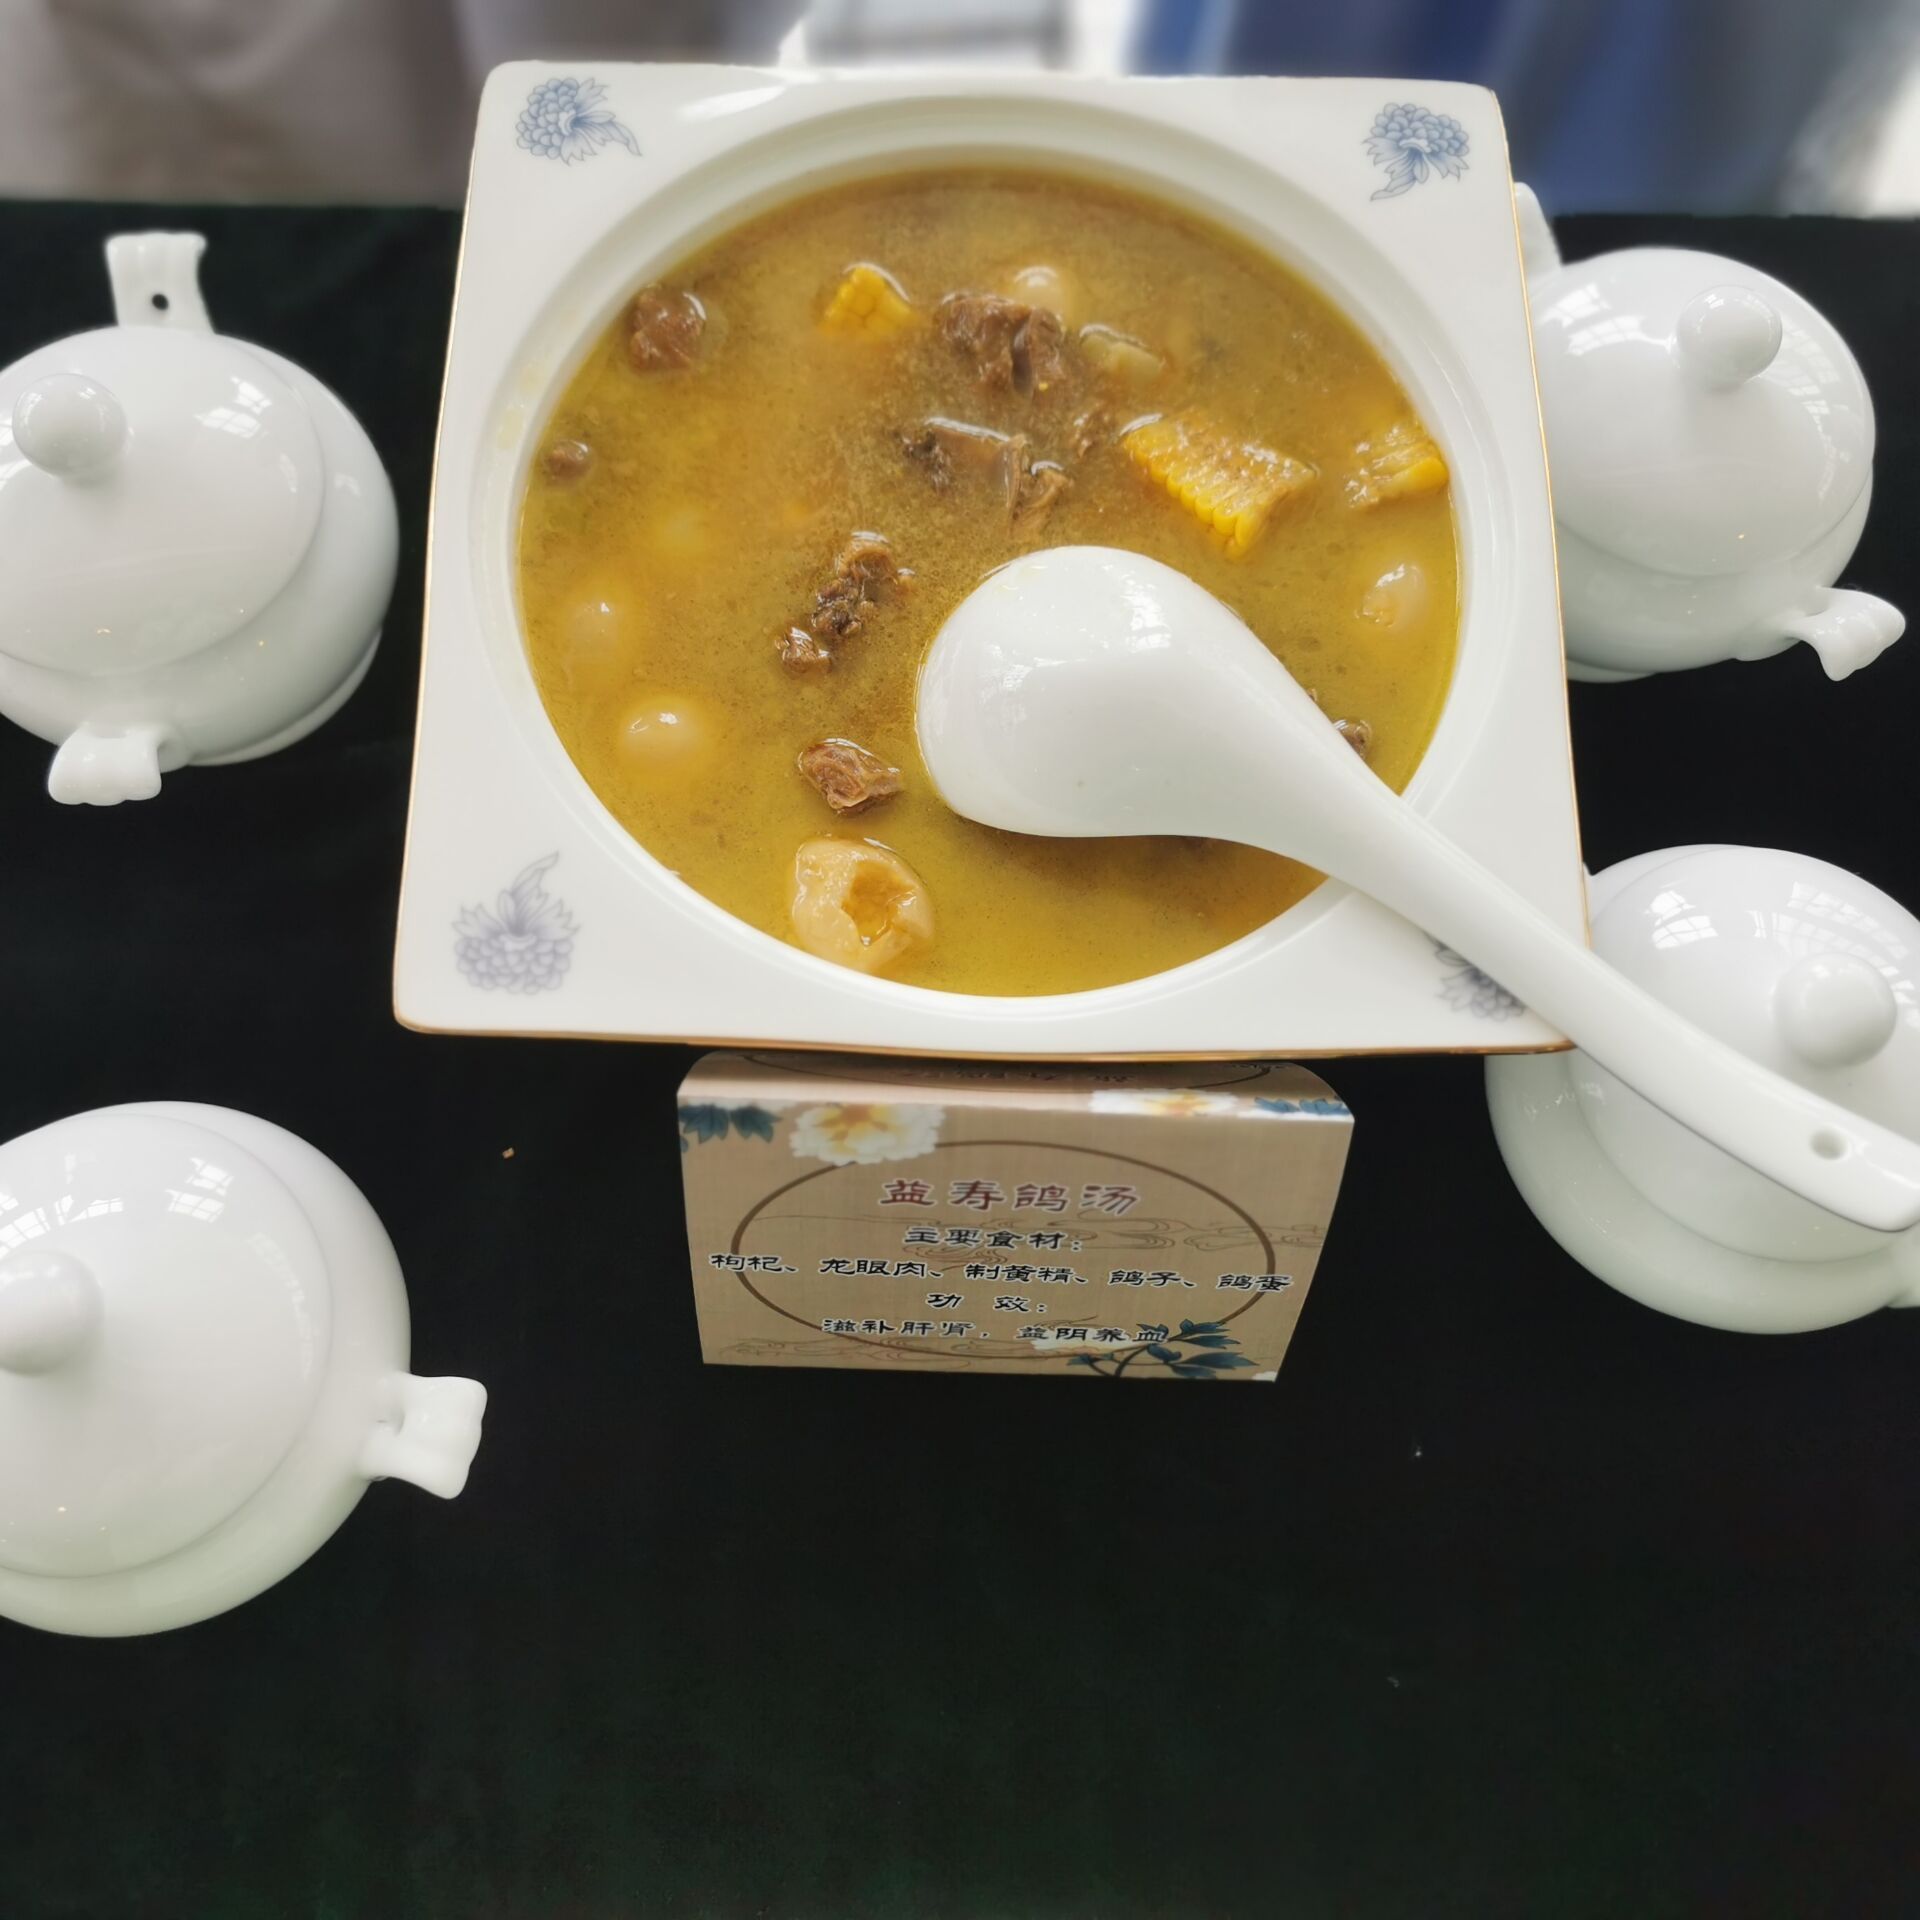 益寿鸽子汤，主要食材有枸杞、龙眼肉、制黄精、鸽子、鸽蛋，有滋补肝肾，益阴养血的功效。